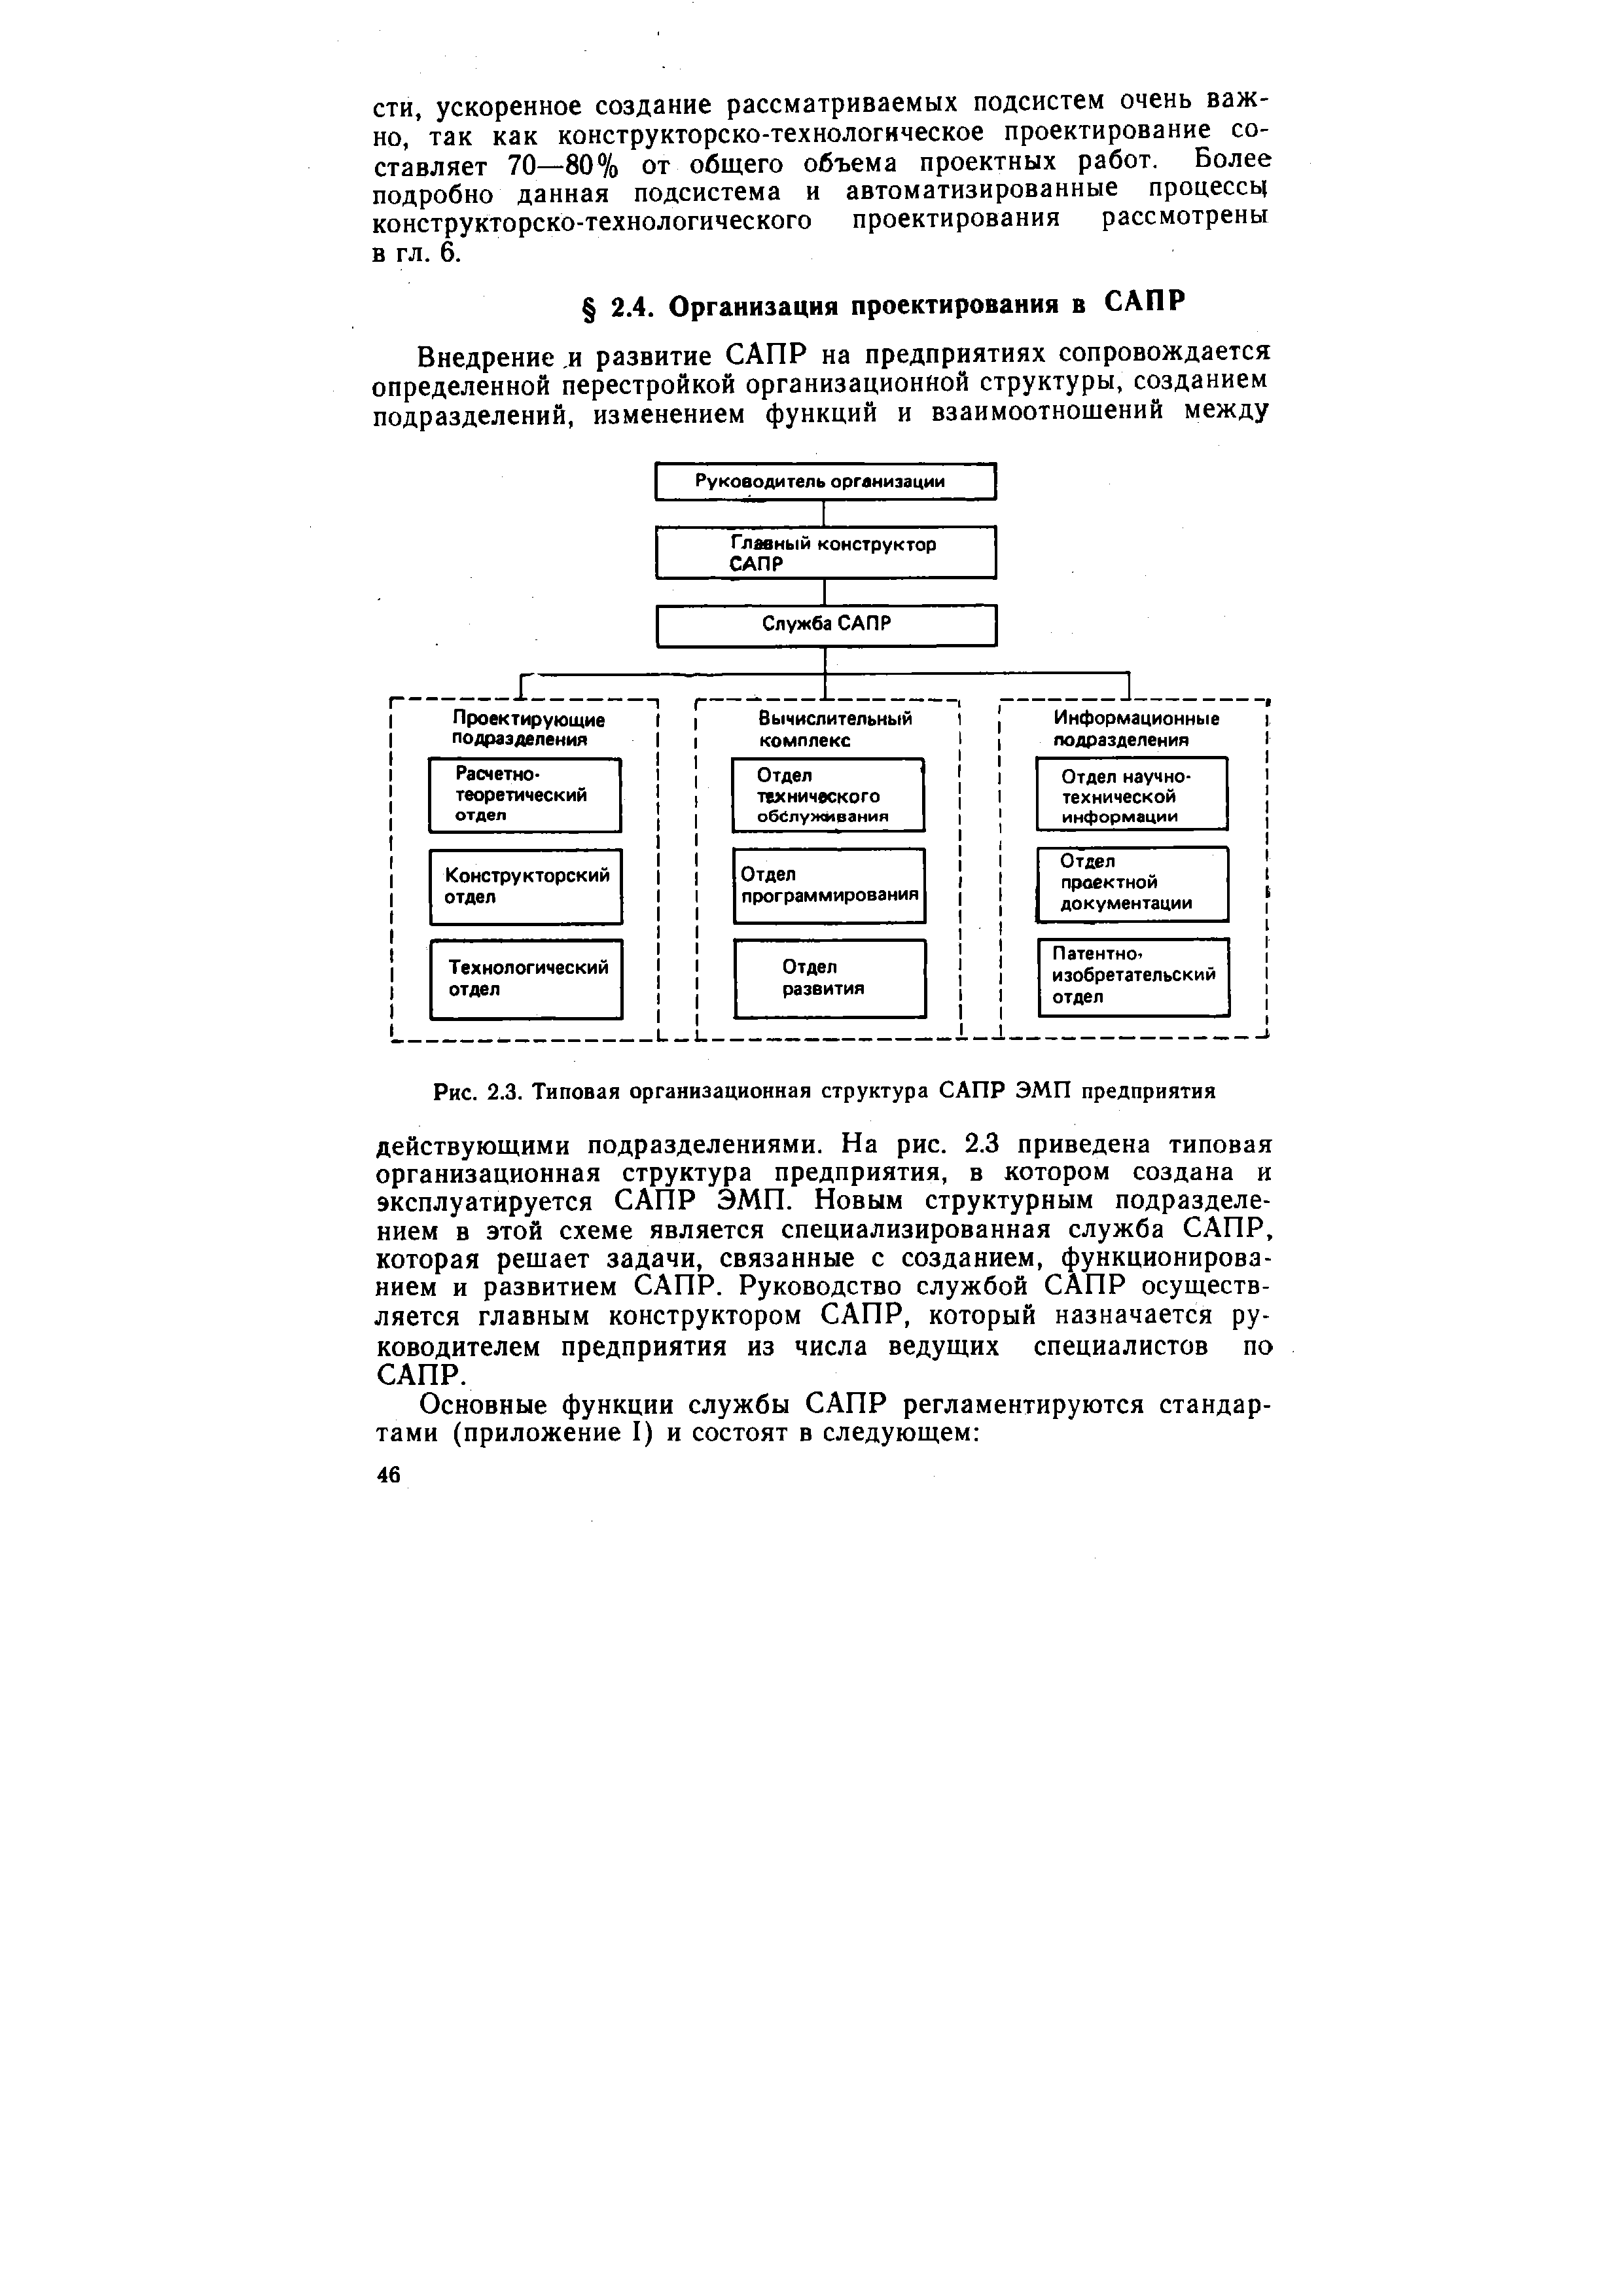 Рис. 2.3. Типовая организационная структура САПР ЭМП предприятия
